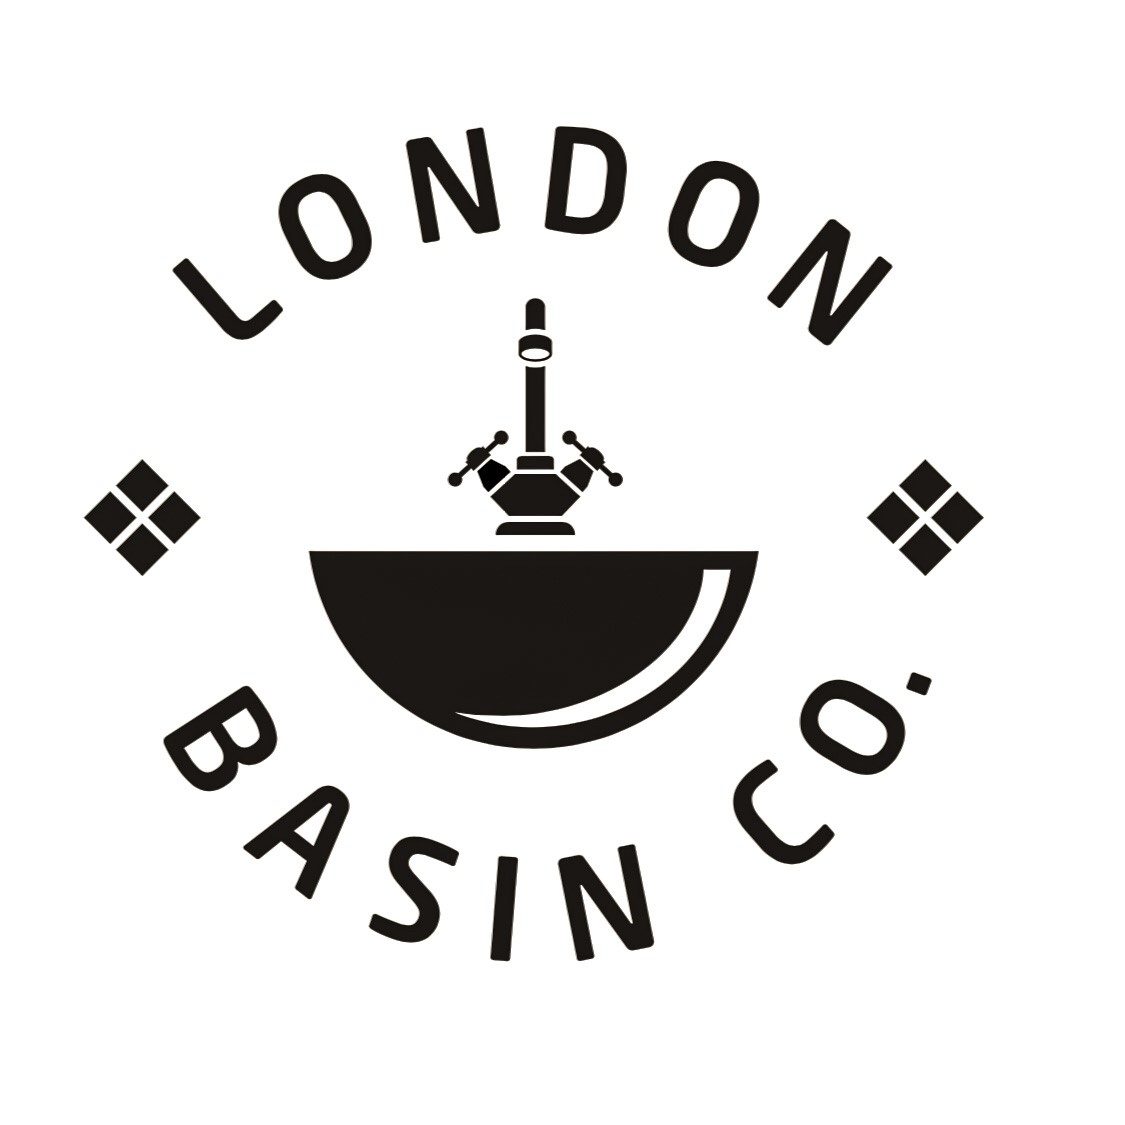 London Basin Company